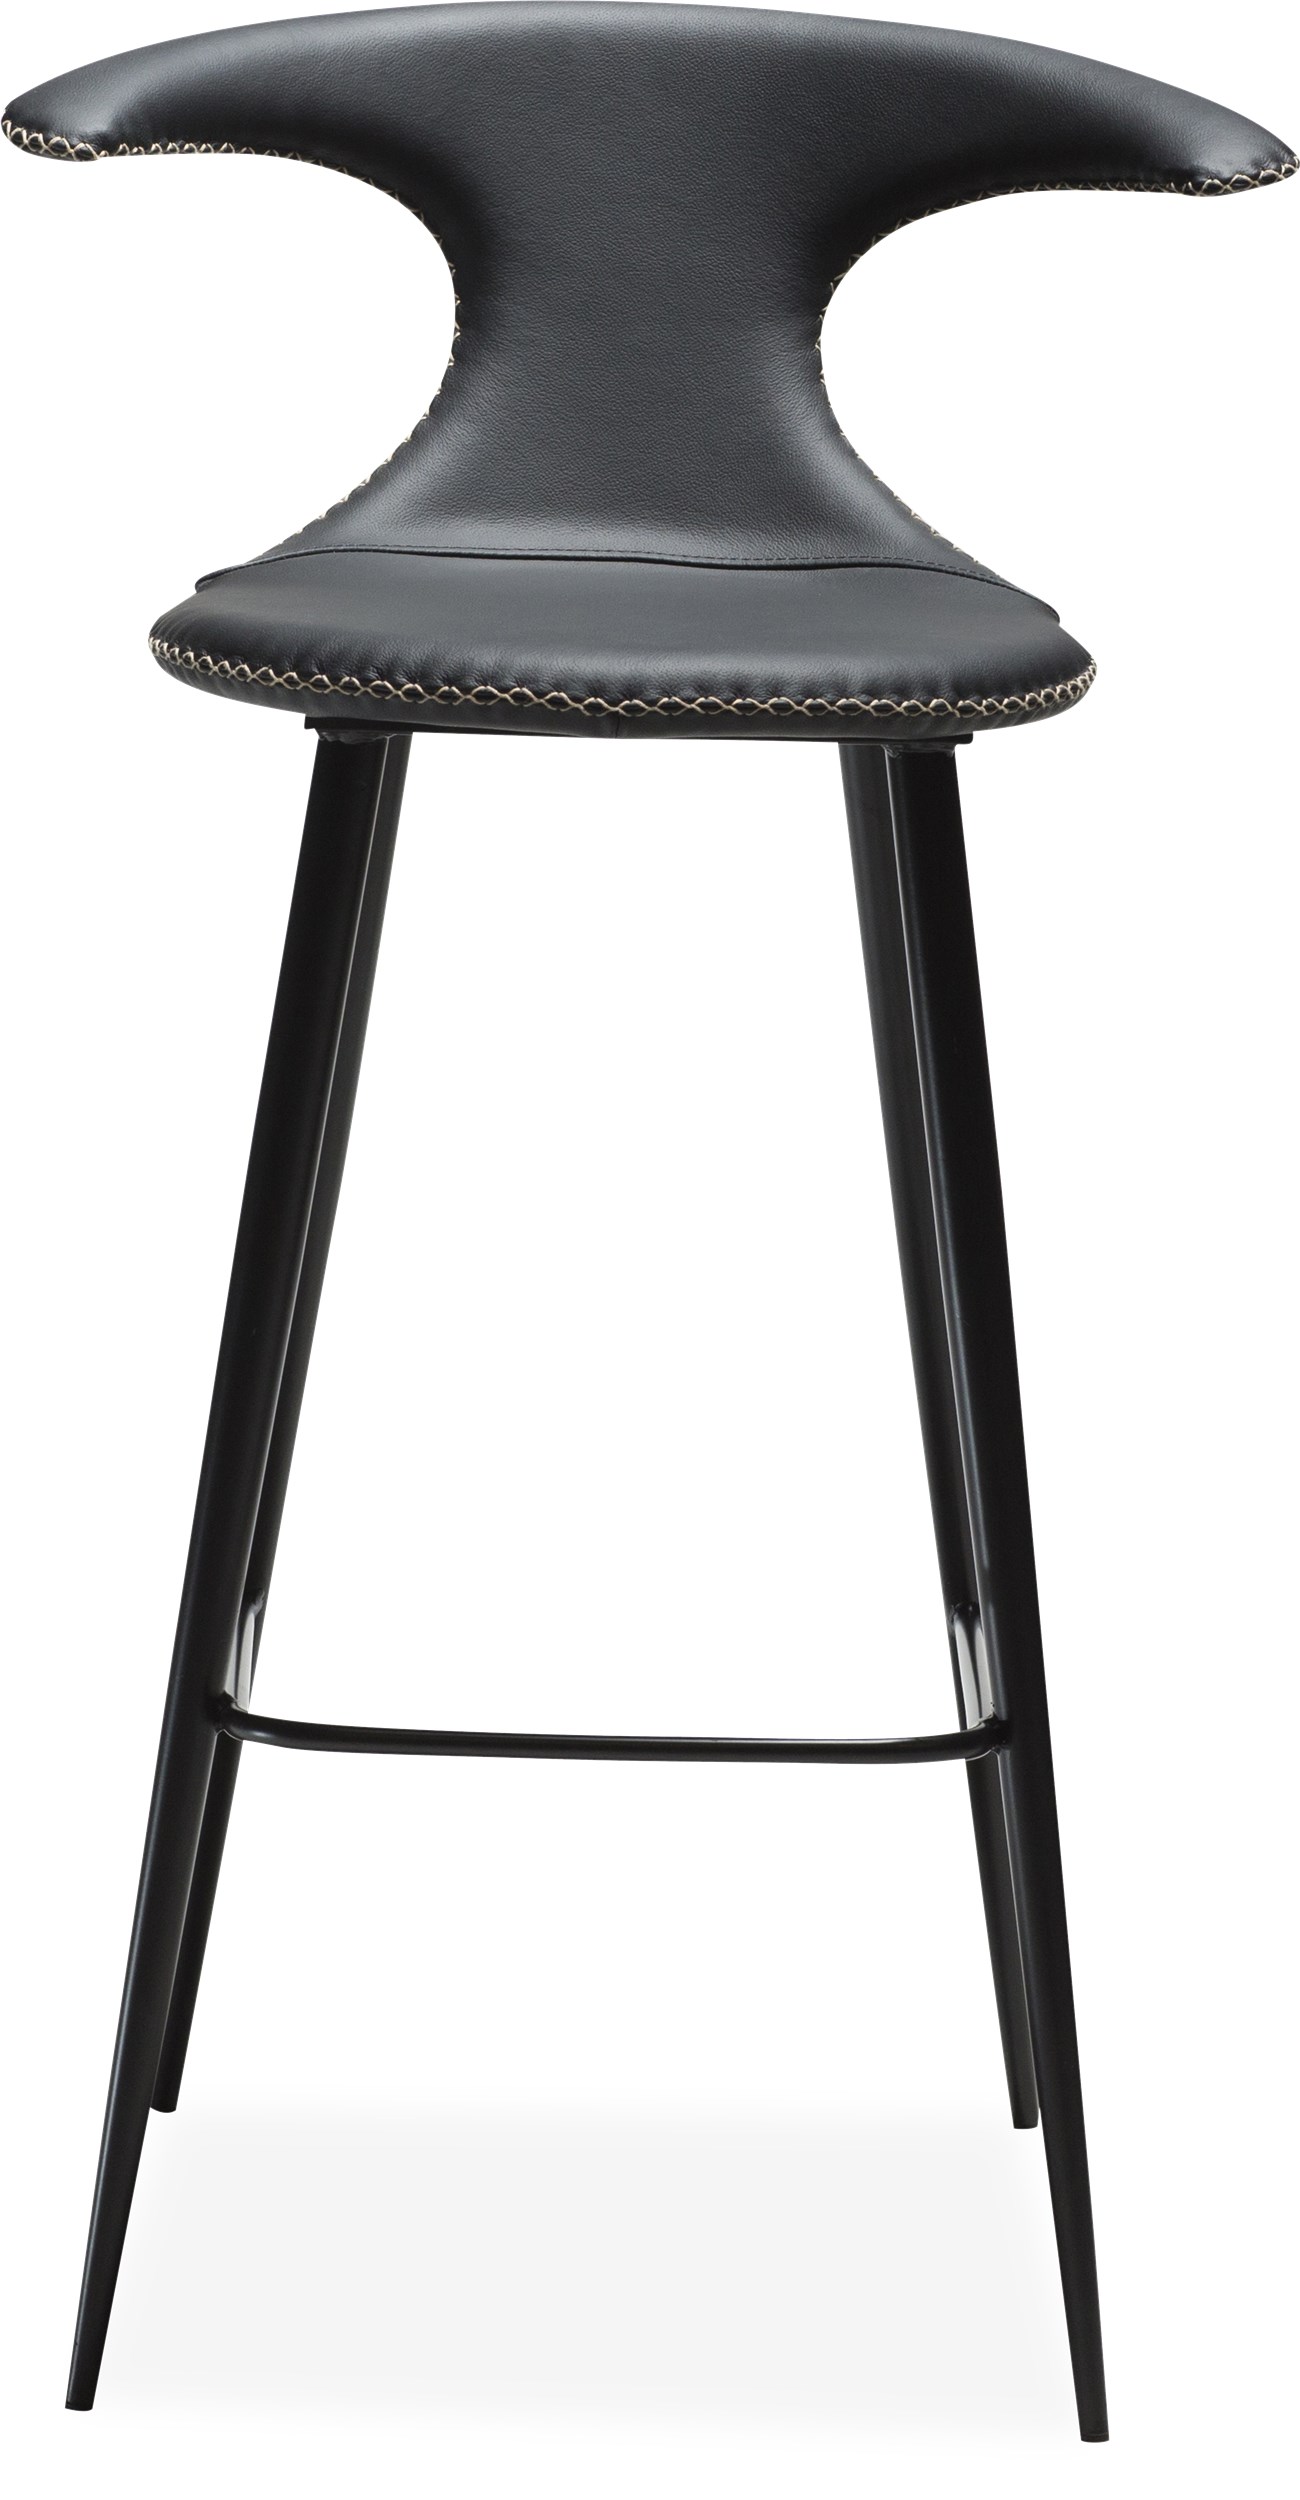 Flaire Barstol - Sits i svart läder, med kontrastfärgade sömmar och runda ben i svartlackerad metall